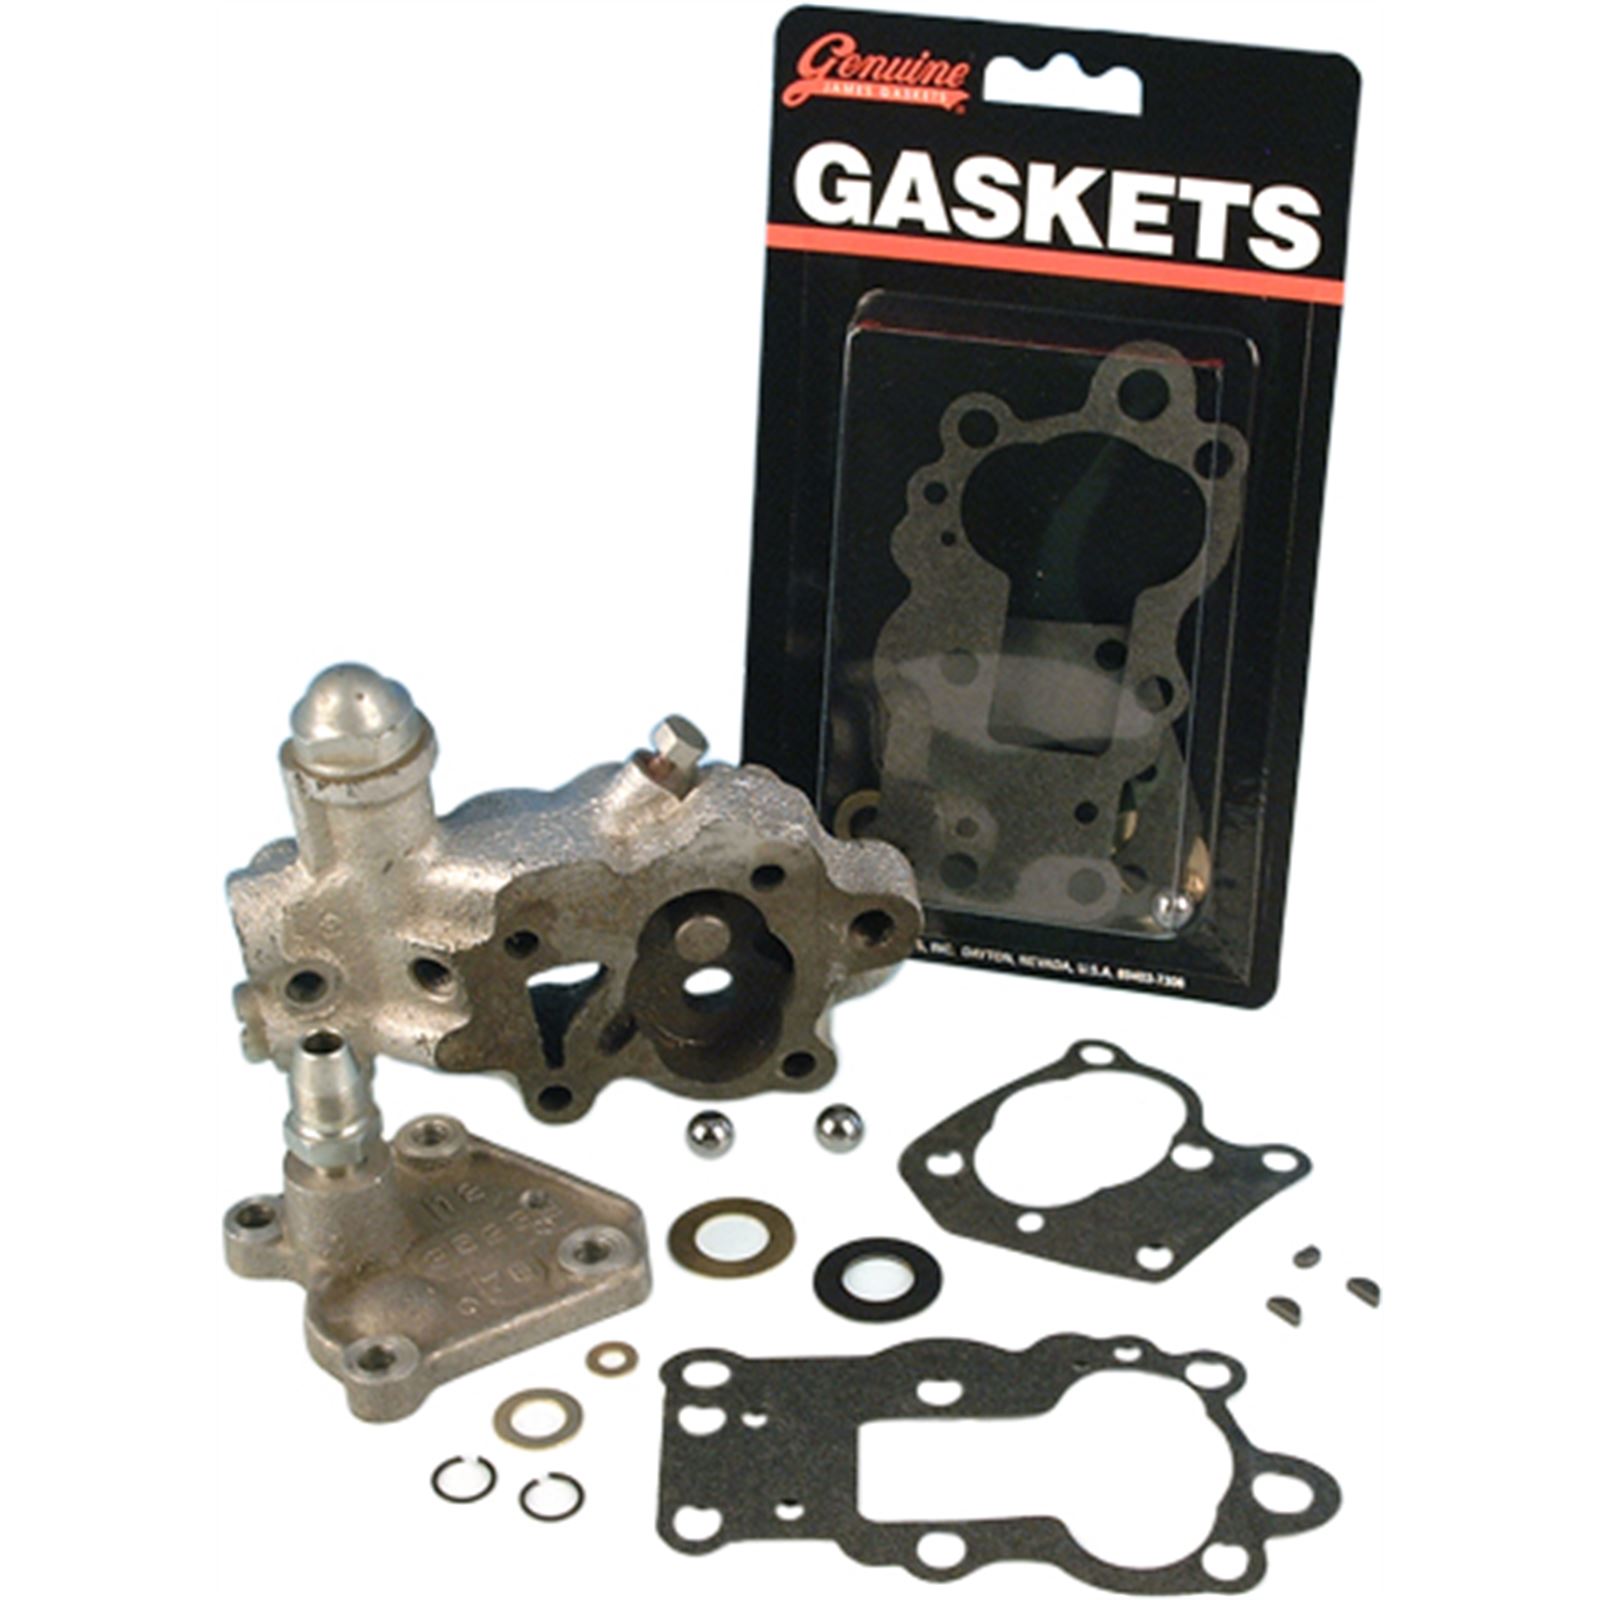 JGI-63800-48-K Side Mount Oil Filter Gasket Set~ James Gasket